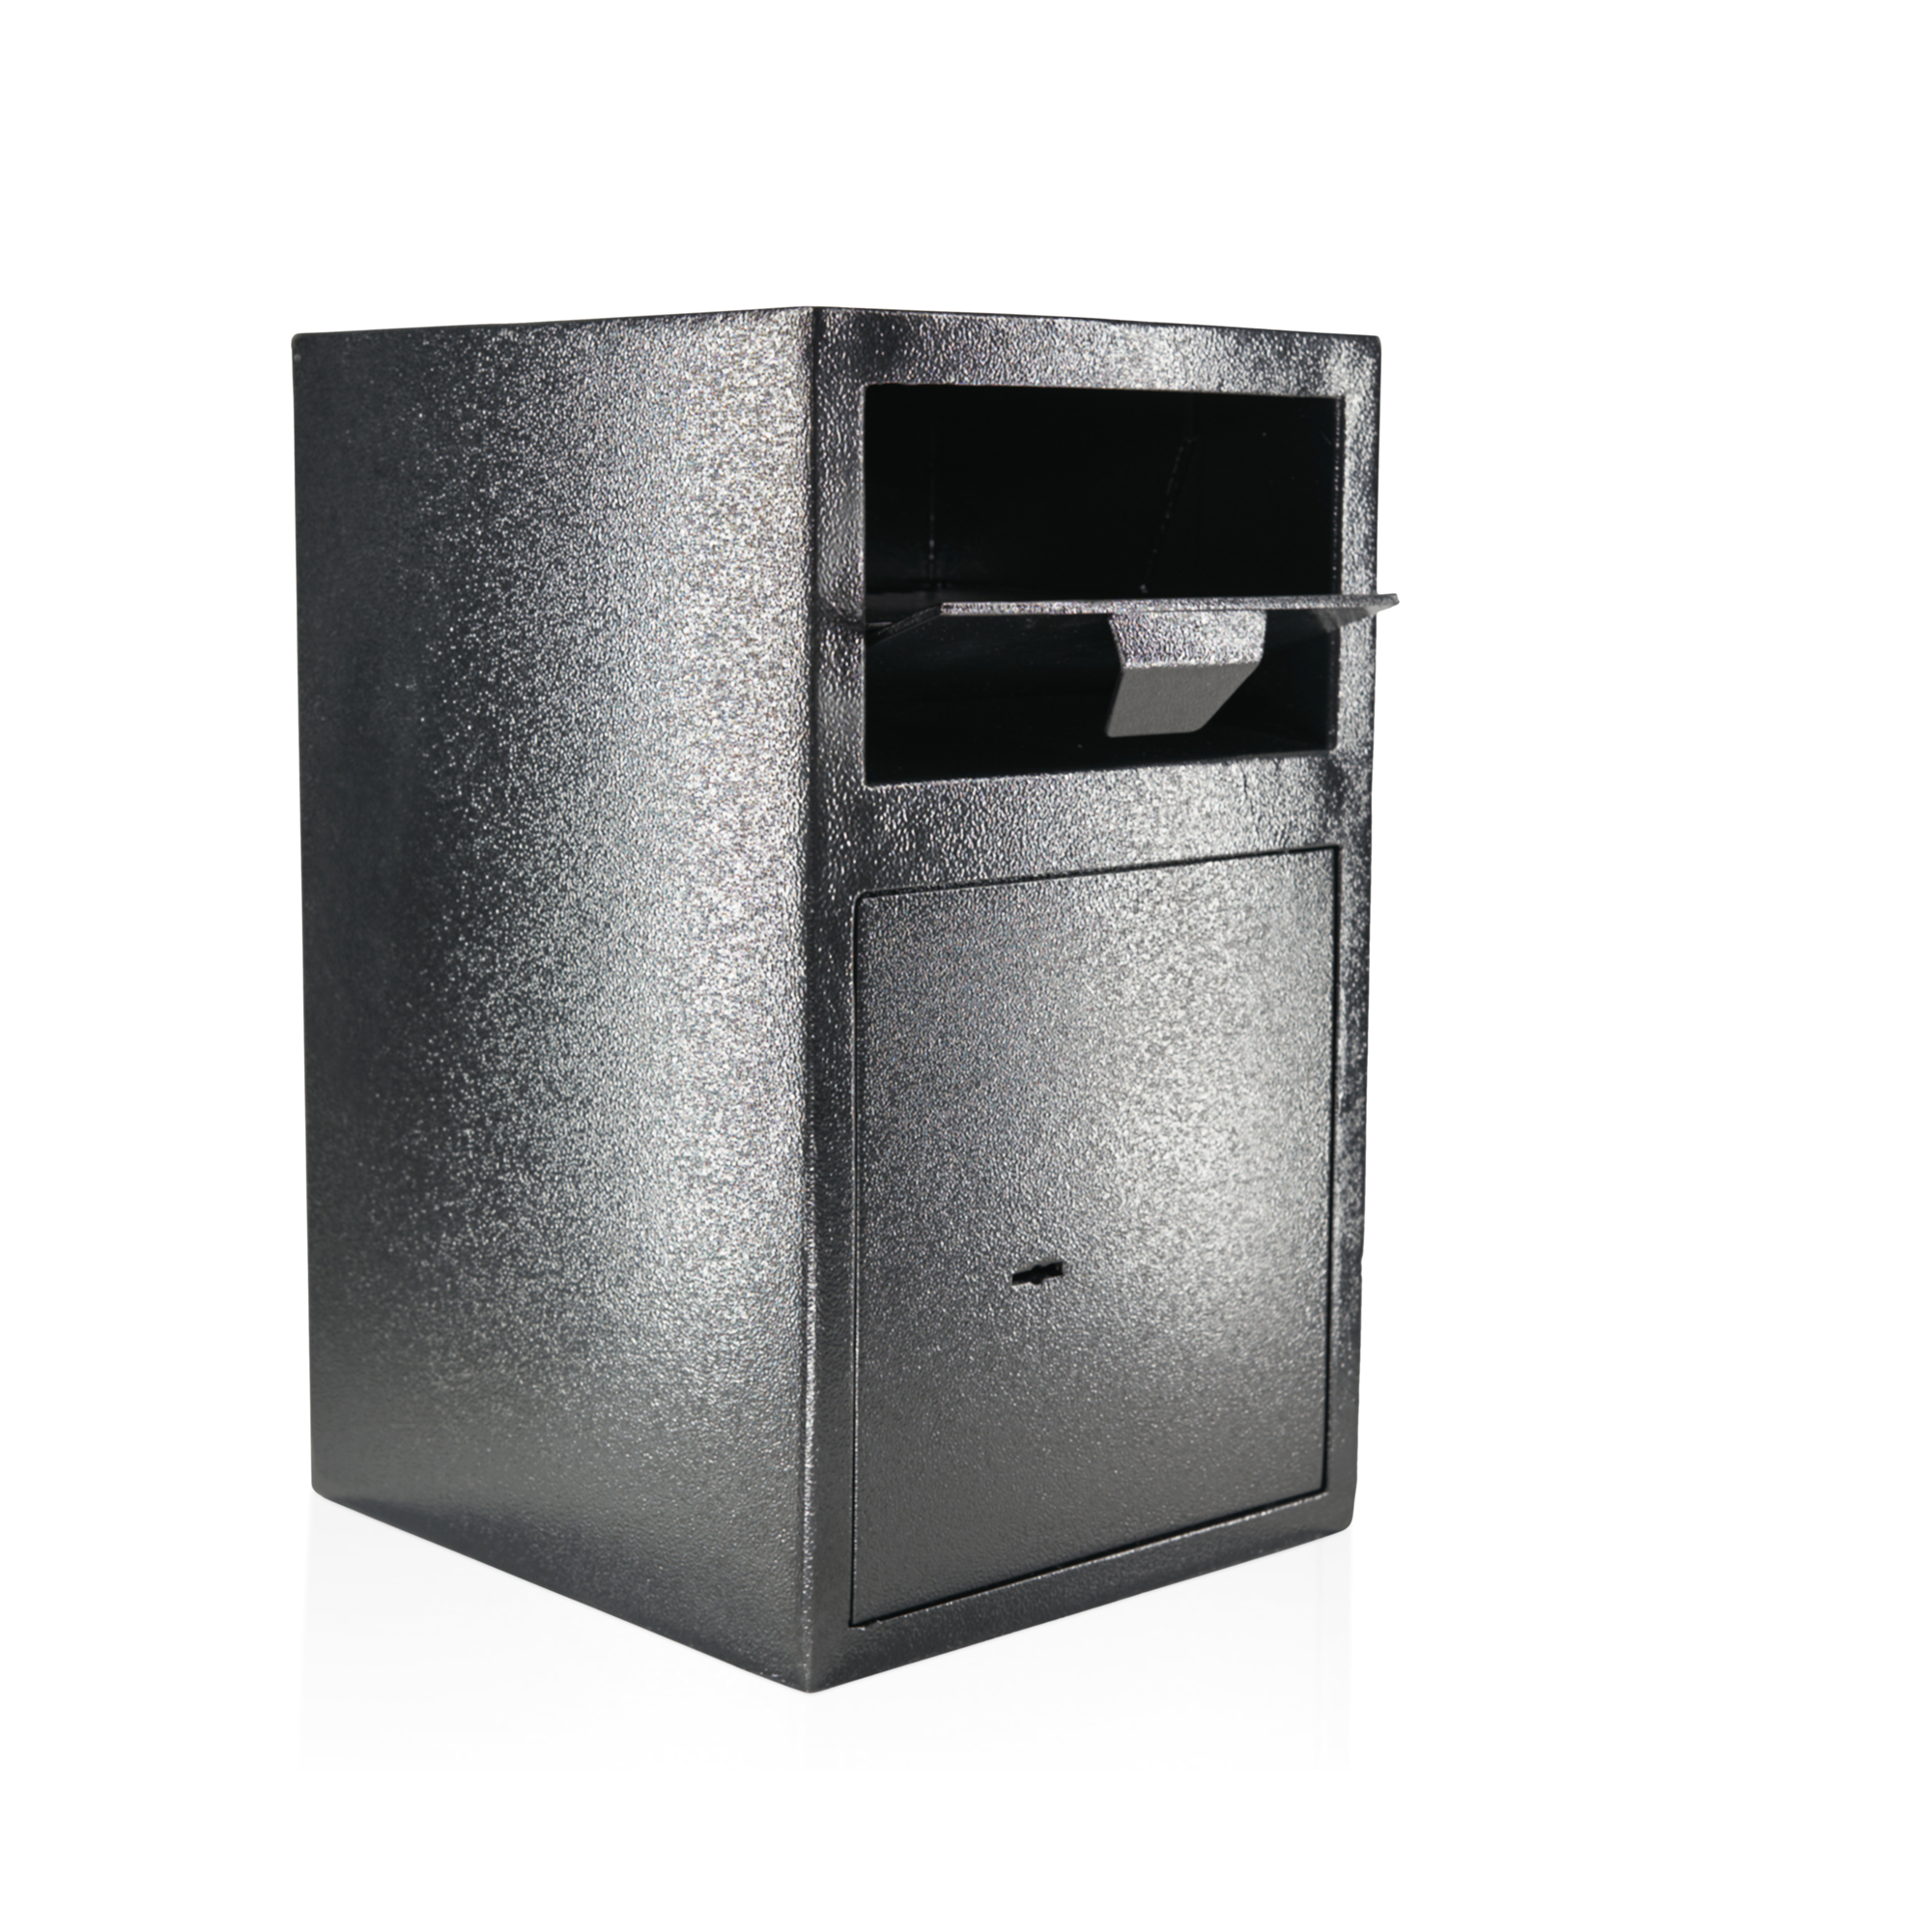 Caja de depósito con solapa de depósito | Nivel de seguridad A | Gastronomía | Cerradura de llave